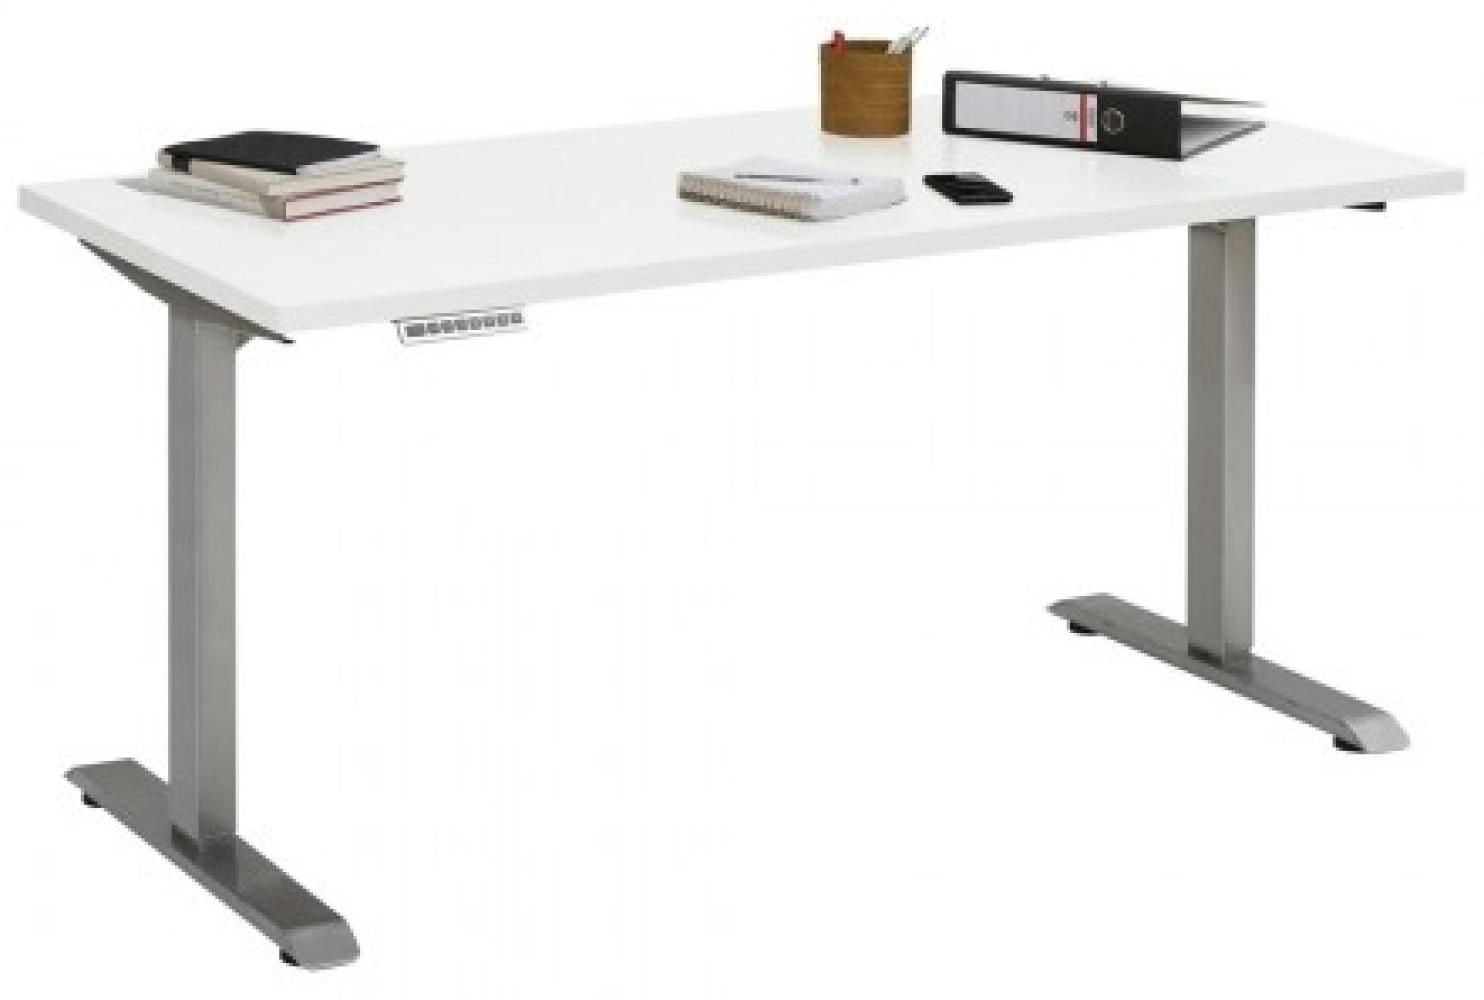 Maja Höhenverstellbarer Schreibtisch 5504 Roheisen natur lackiert - weiß matt Bild 1